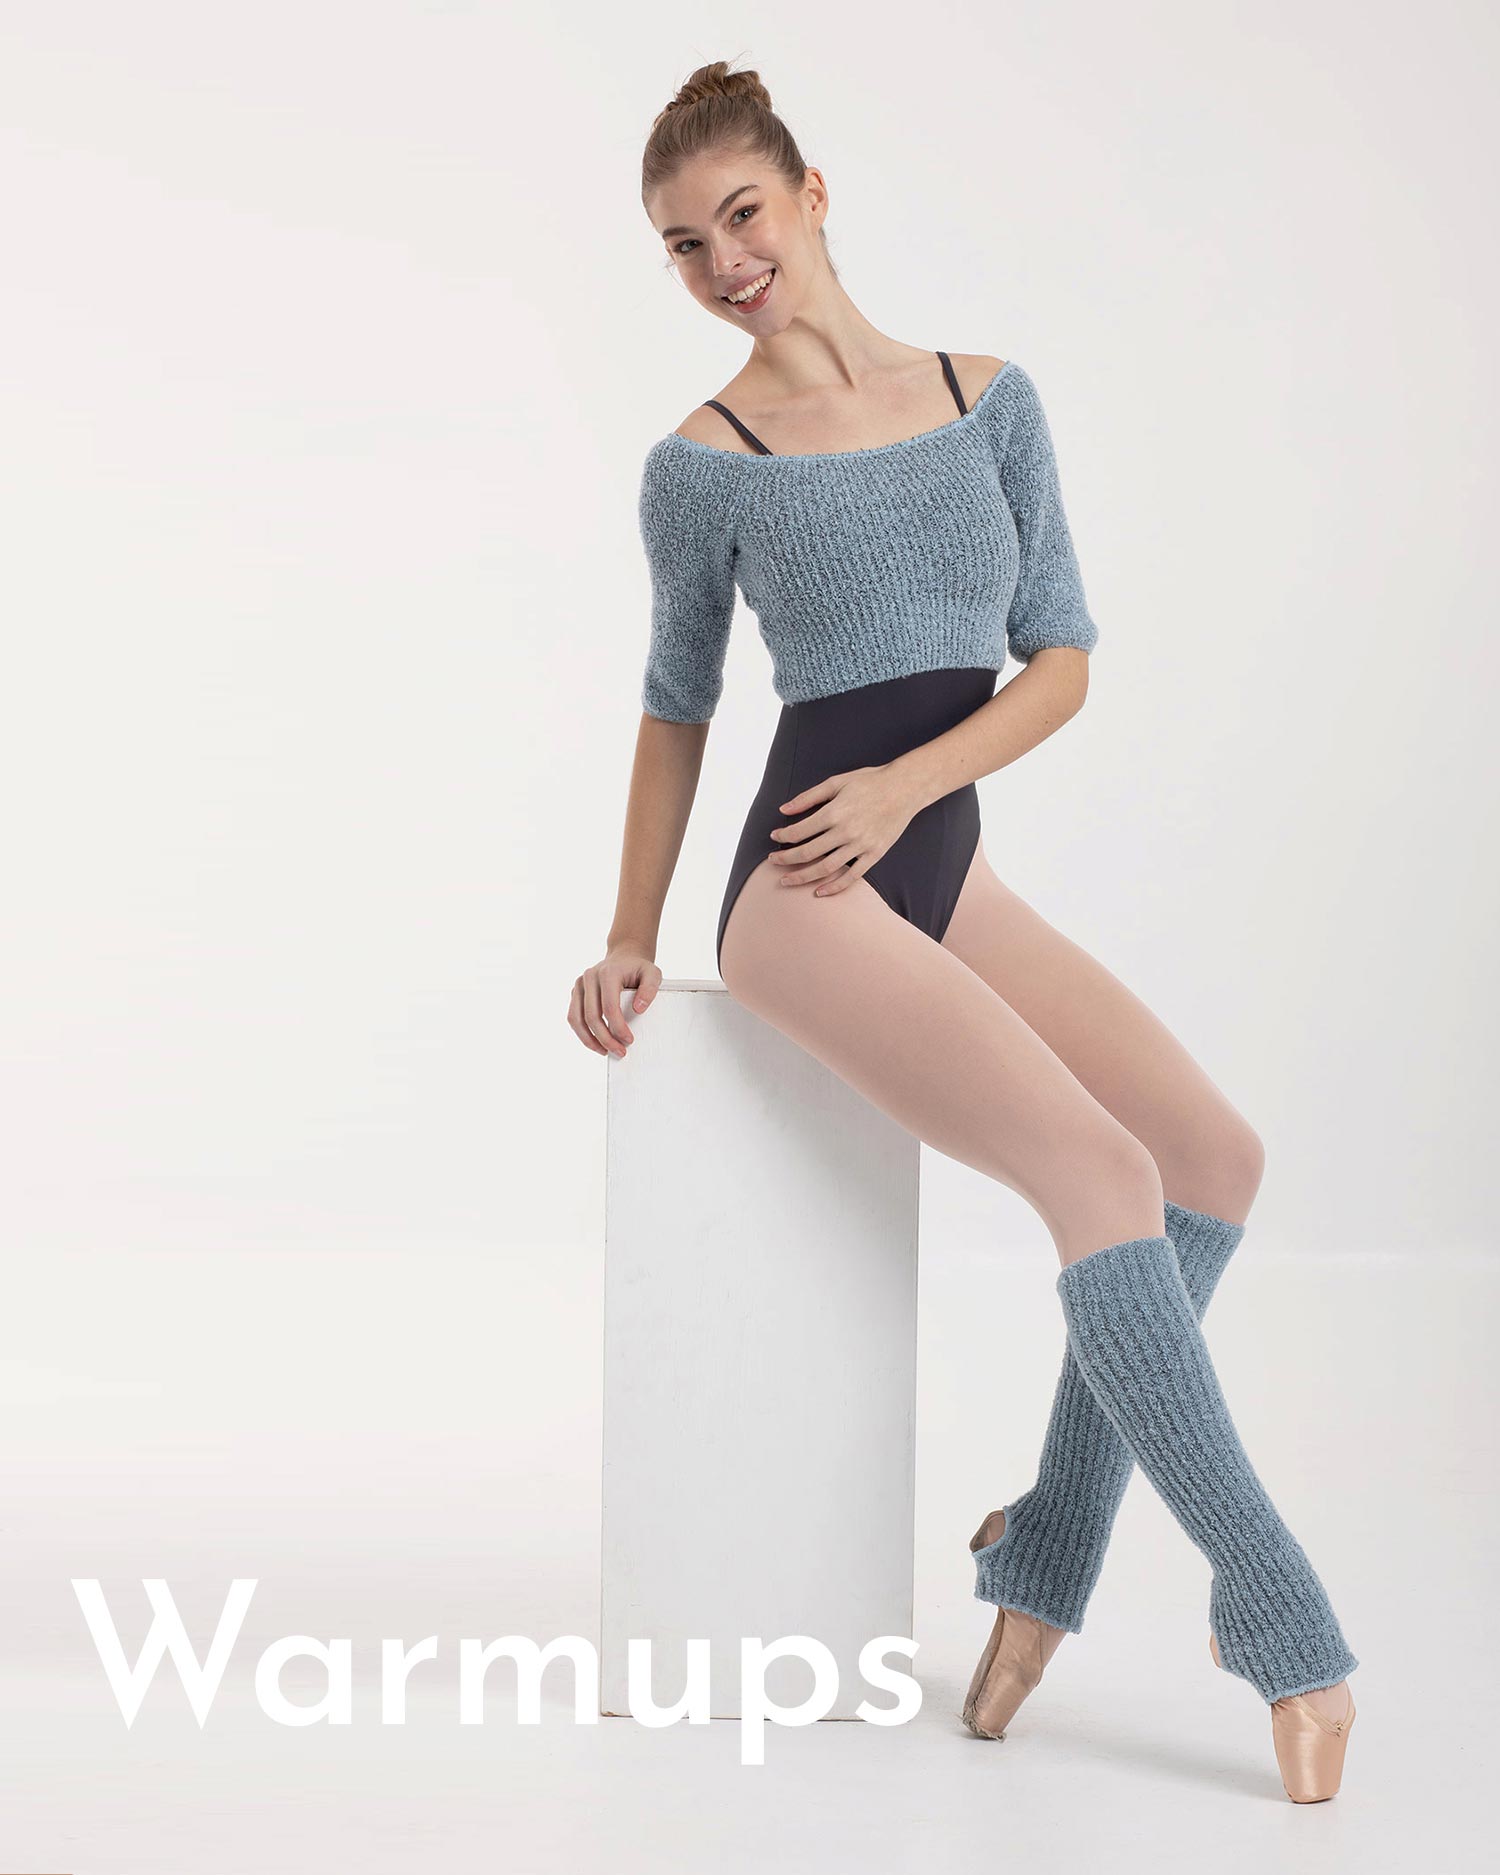 Ropa de calentamiento: monos, pantalones y jerséis de lana para bailarinas